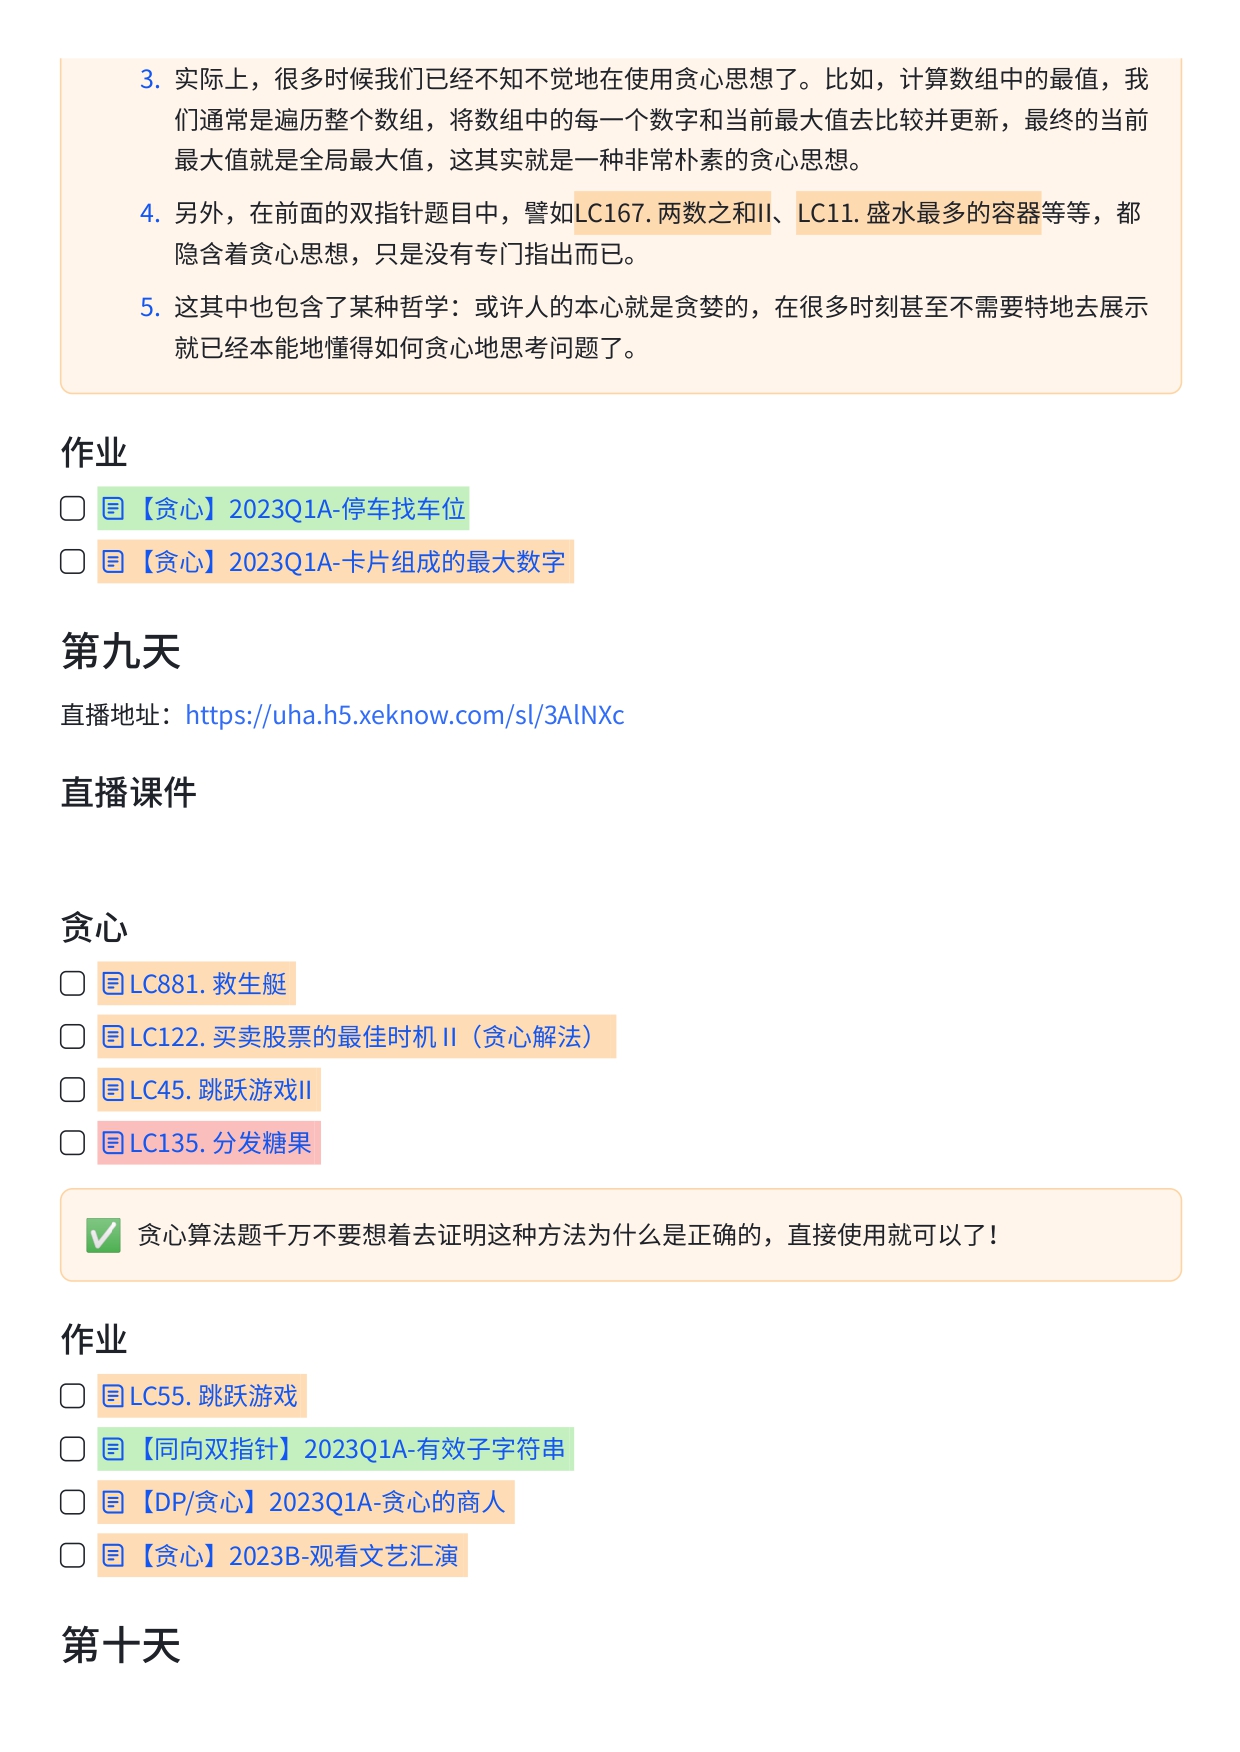 华为OD精品小班培训课程安排【一期】 (1)_page-0010